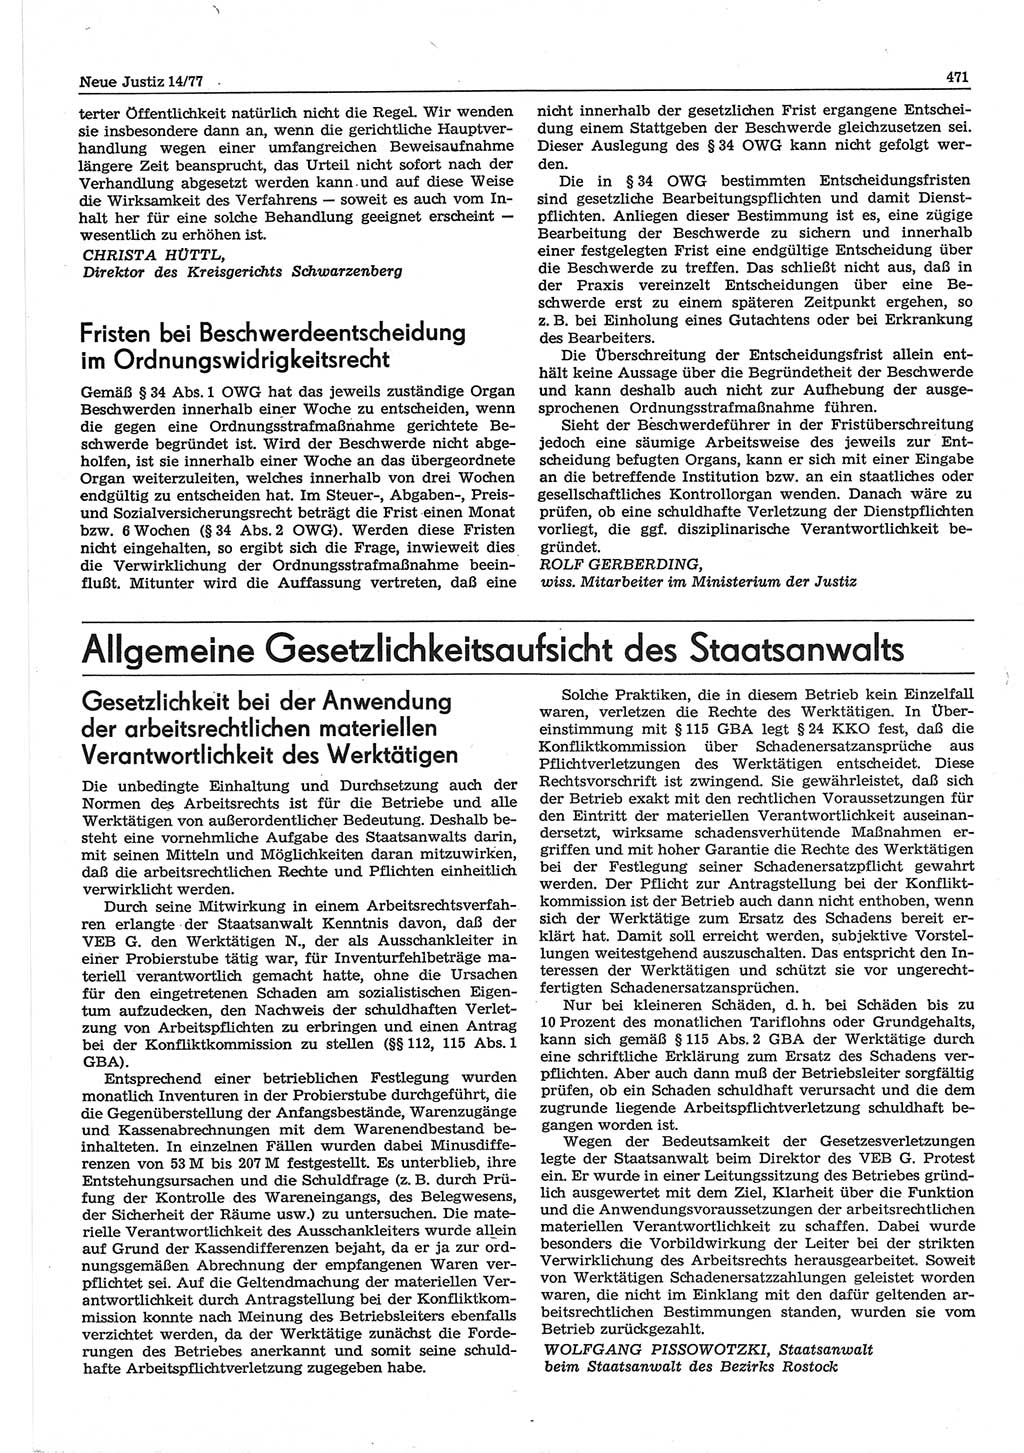 Neue Justiz (NJ), Zeitschrift für Recht und Rechtswissenschaft-Zeitschrift, sozialistisches Recht und Gesetzlichkeit, 31. Jahrgang 1977, Seite 471 (NJ DDR 1977, S. 471)